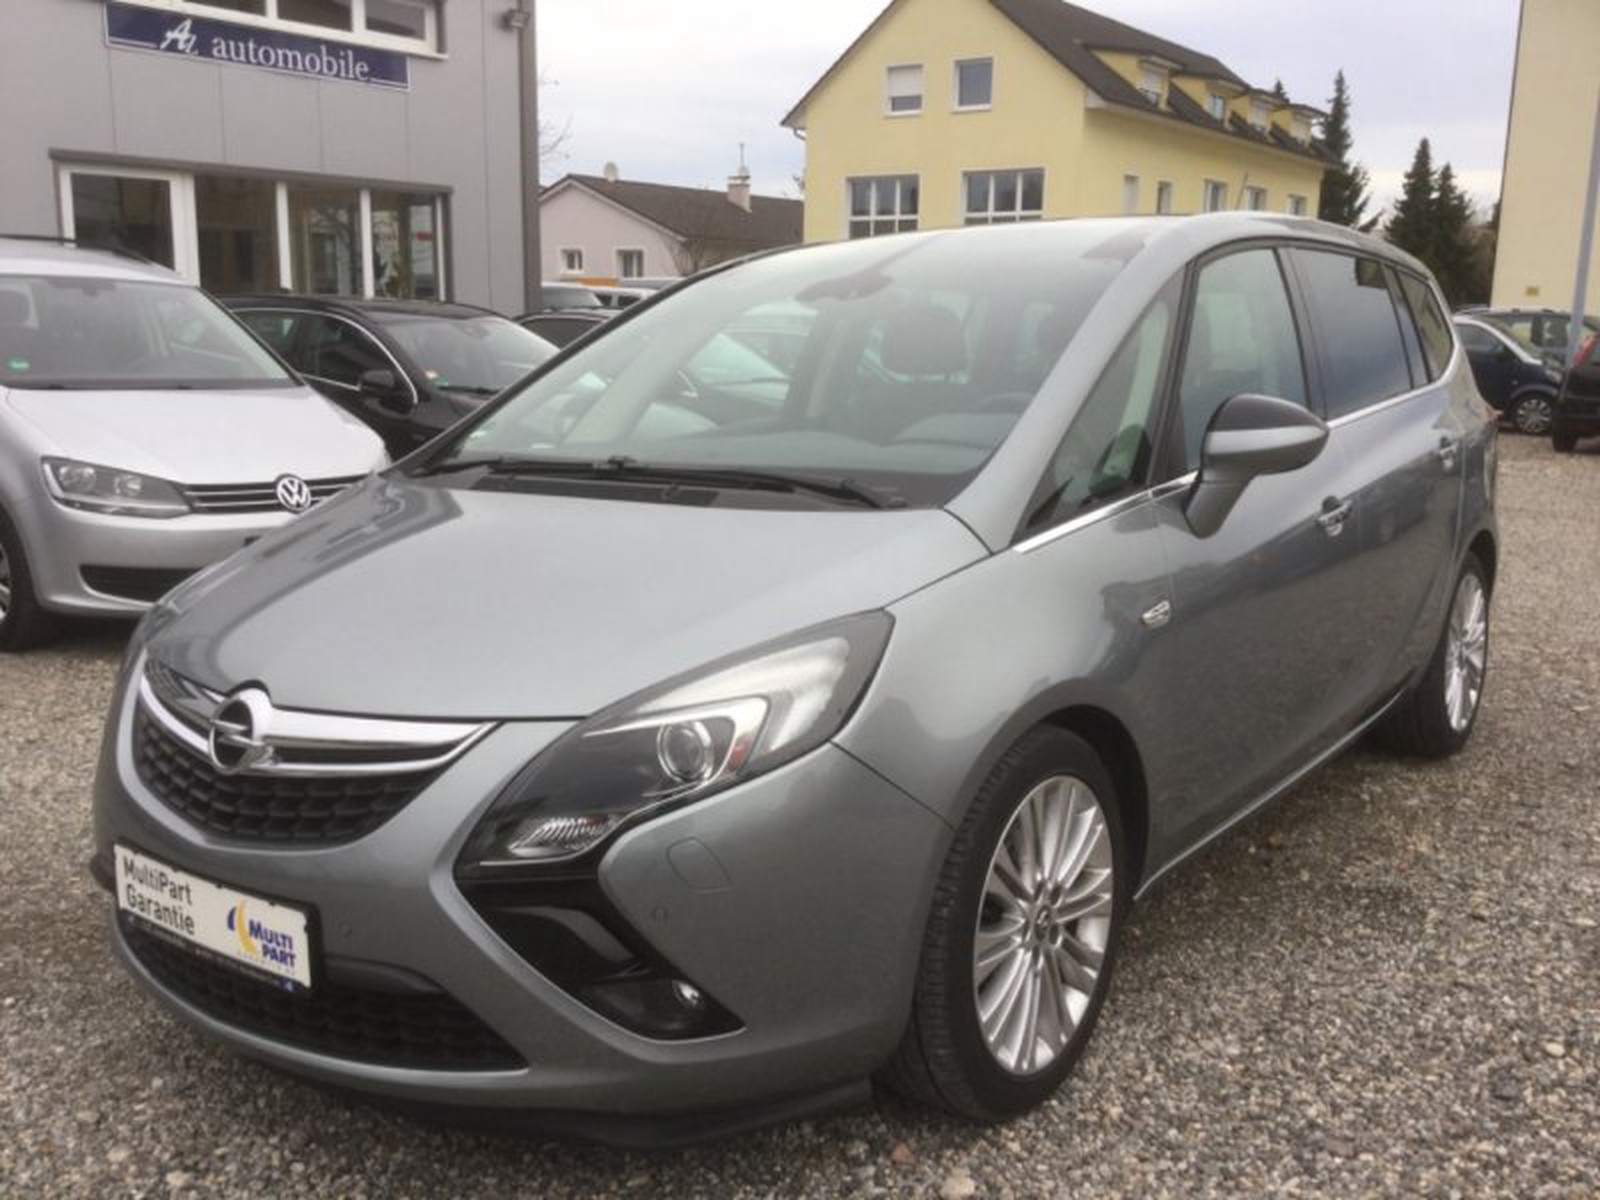 Opel Zafira Tourer C Innovation gebraucht kaufen in Kirchheim Teck -  Int.Nr.: OPEL VERKAUFT